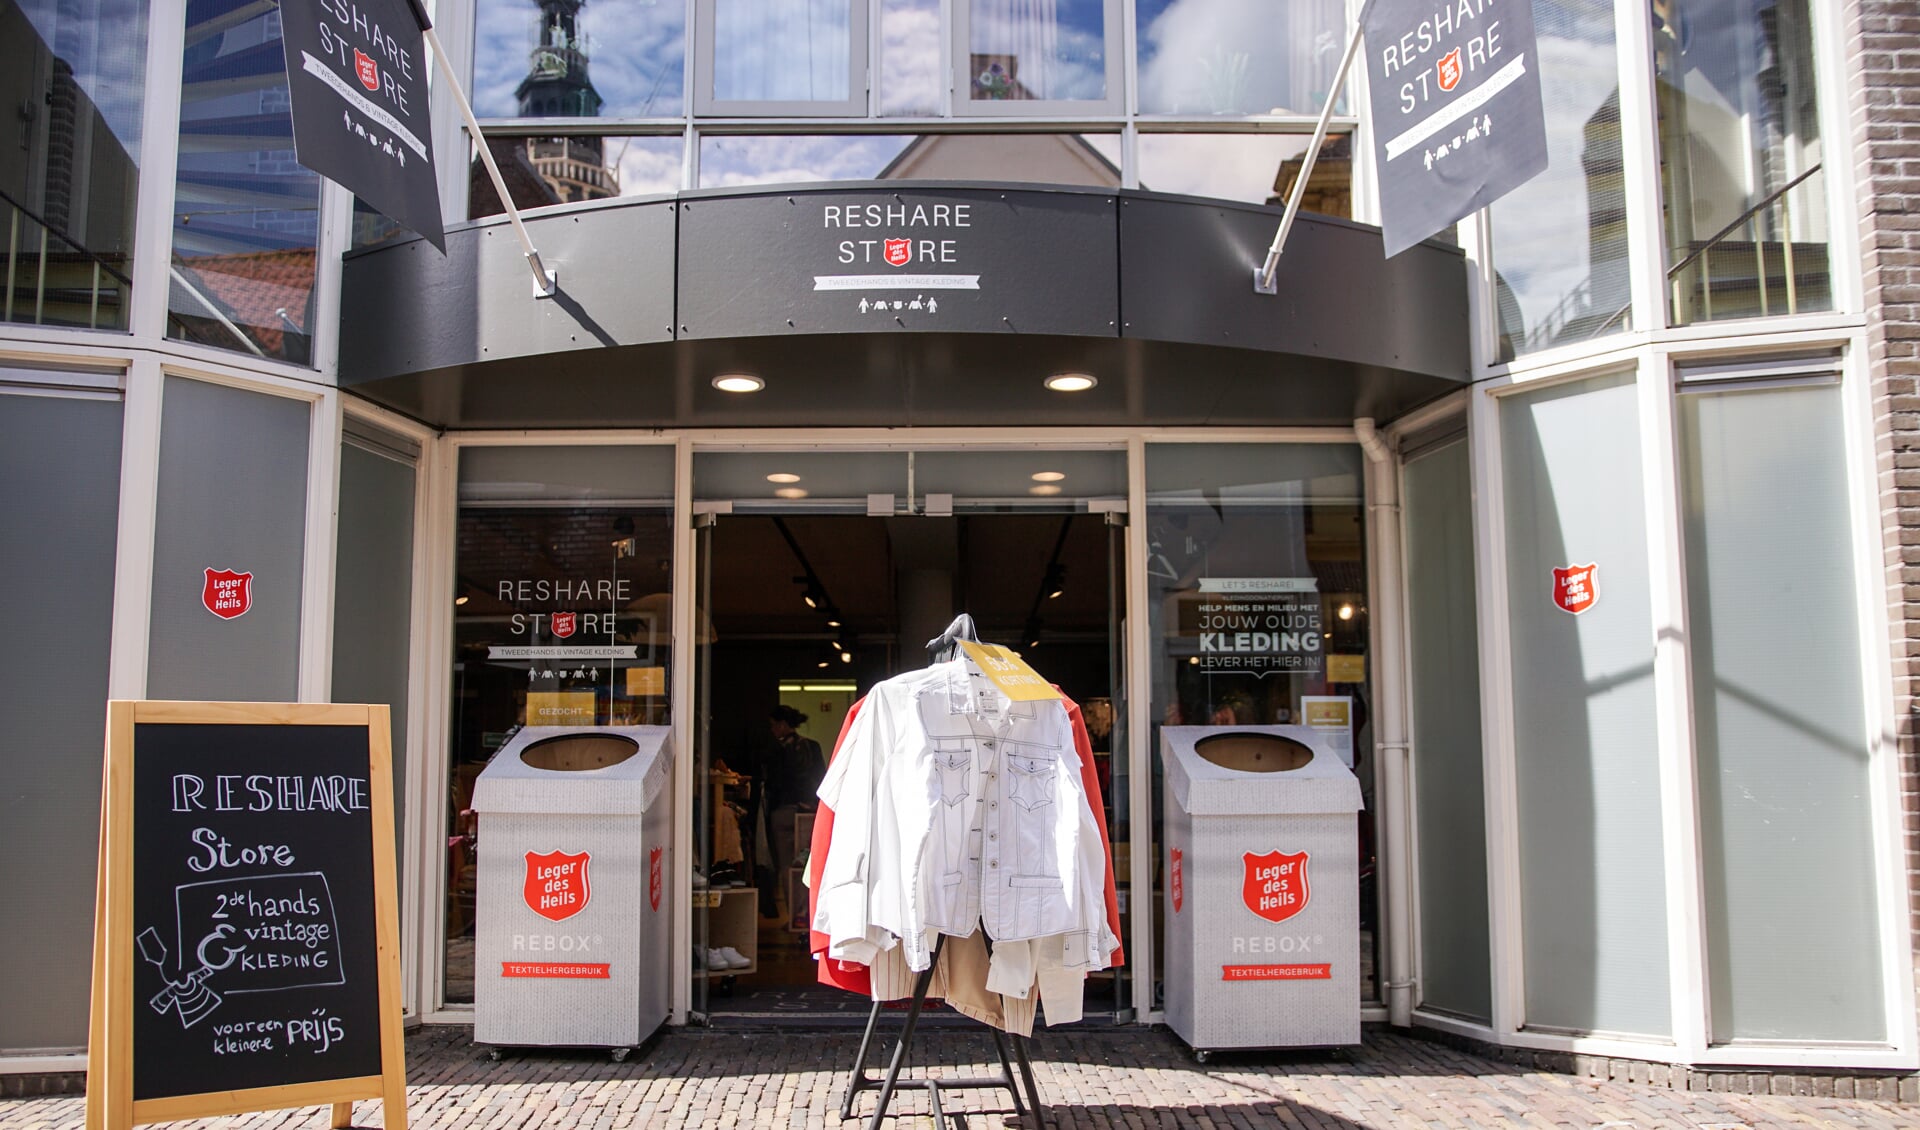 Niet suf, maar écht en goedkoop Tweedehands en vintage kleding van ReShare | Al nieuws uit Alkmaar